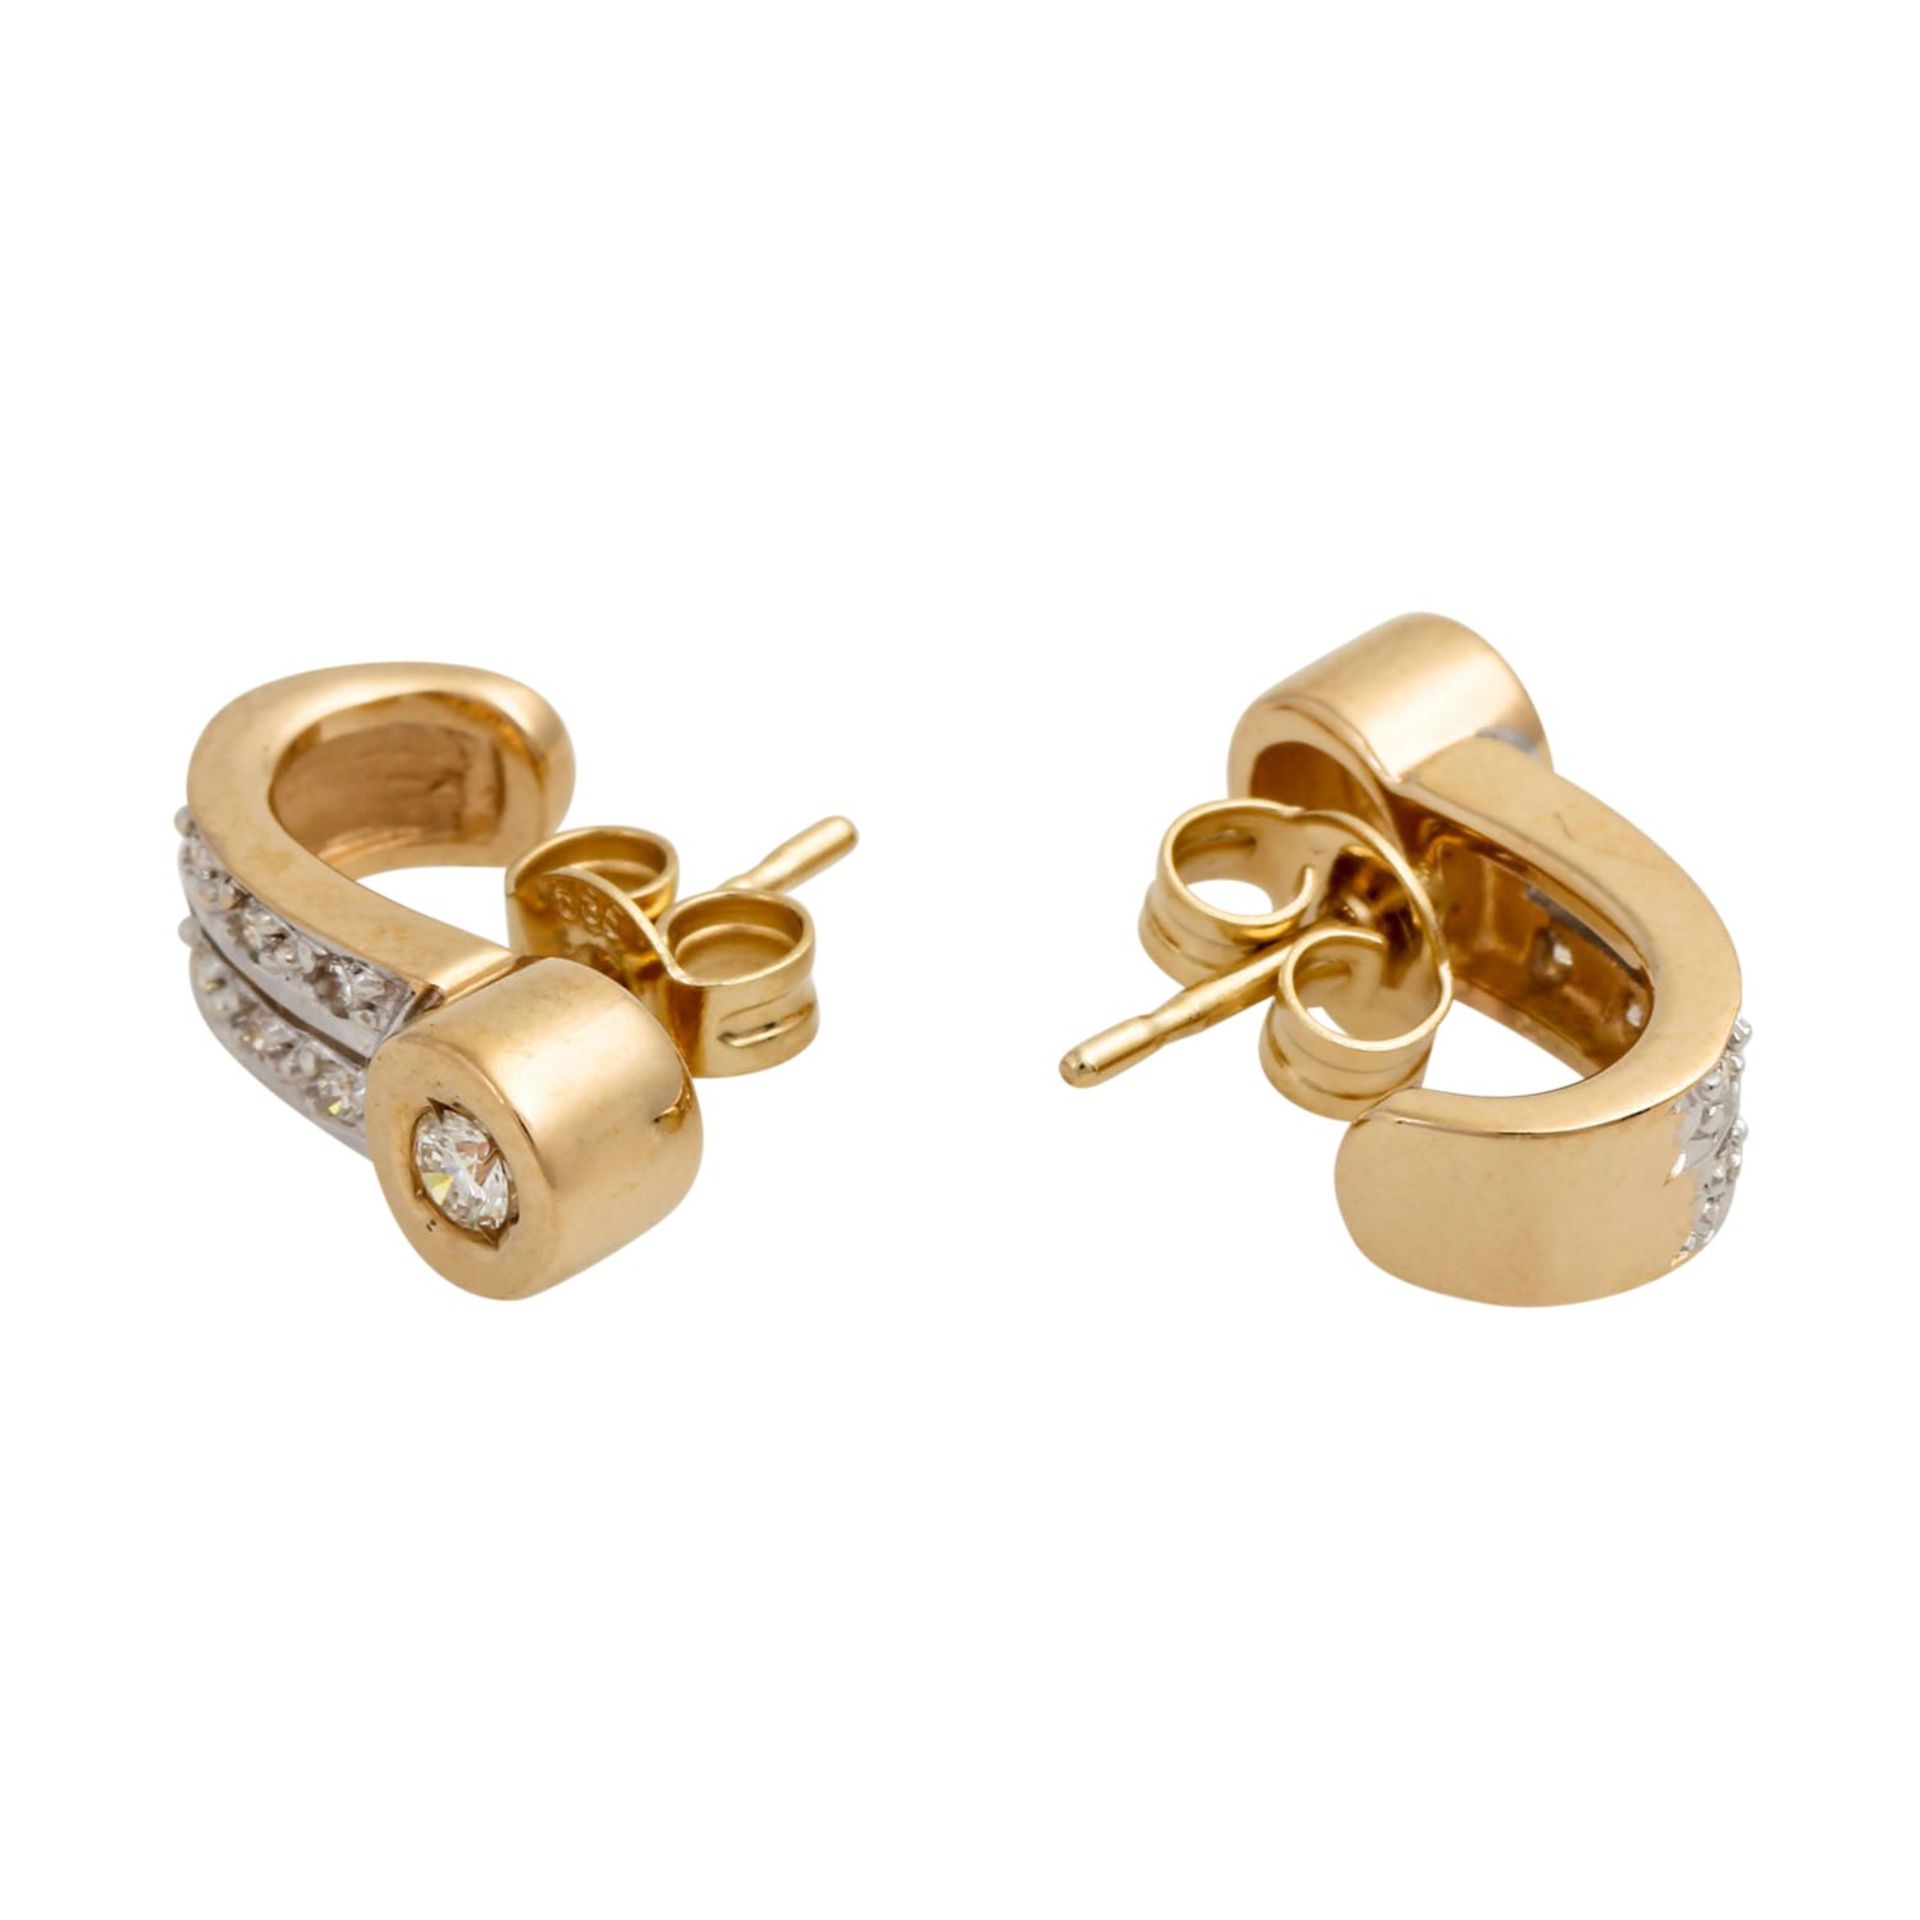 Ring und Ohrringe mit Brillanten von zus. ca. 0,40 ct, gute Reinheit, niedere Farbe, G - Bild 4 aus 9